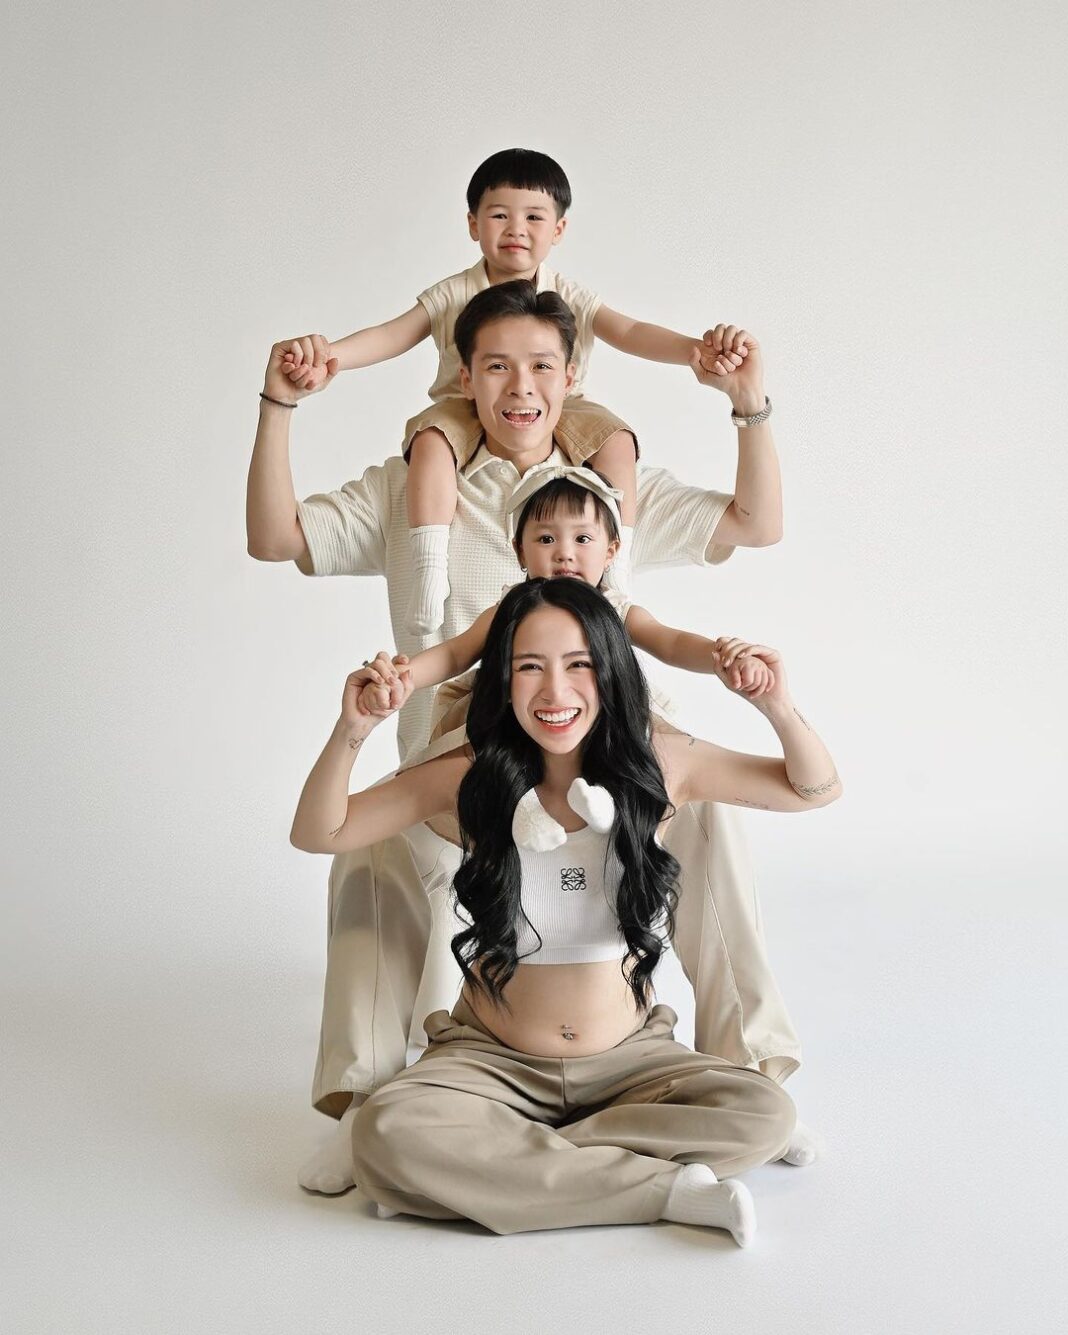 Joyce Phạm đăng tải hình ảnh gia đình hạnh phúc chào đón em bé thứ 3 (Nguồn: Internet)